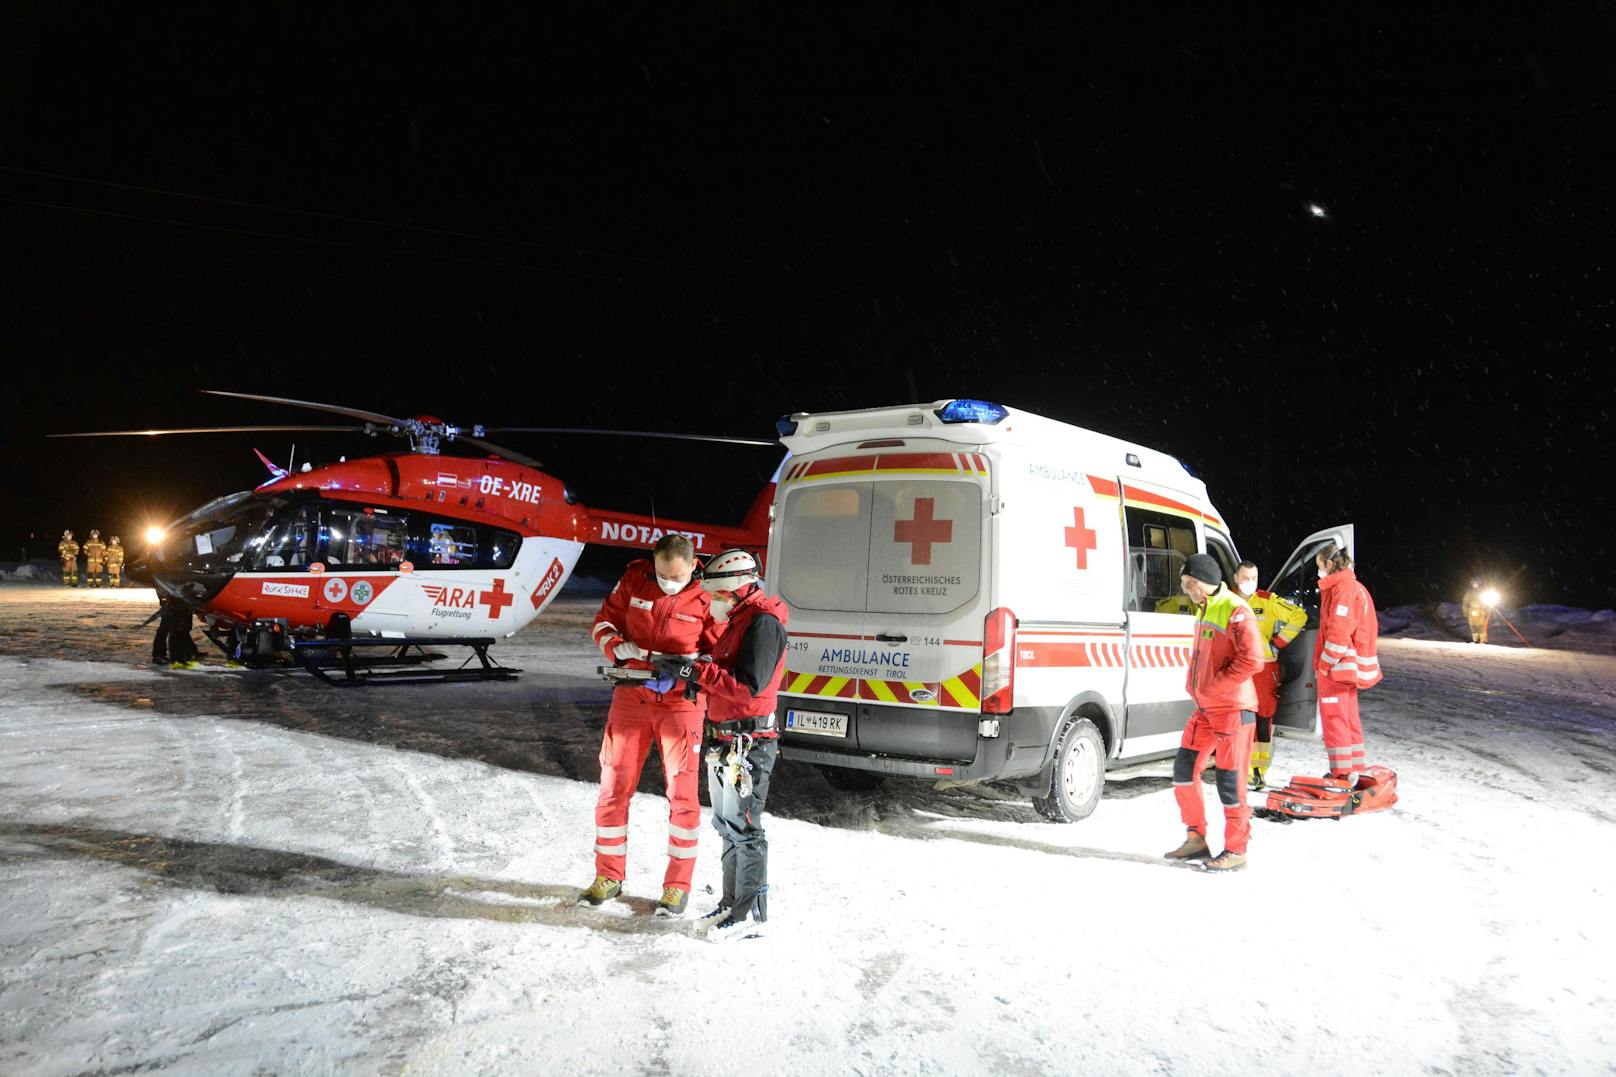 Urlauber liegt nach Skiunfall schwer verletzt im Spital